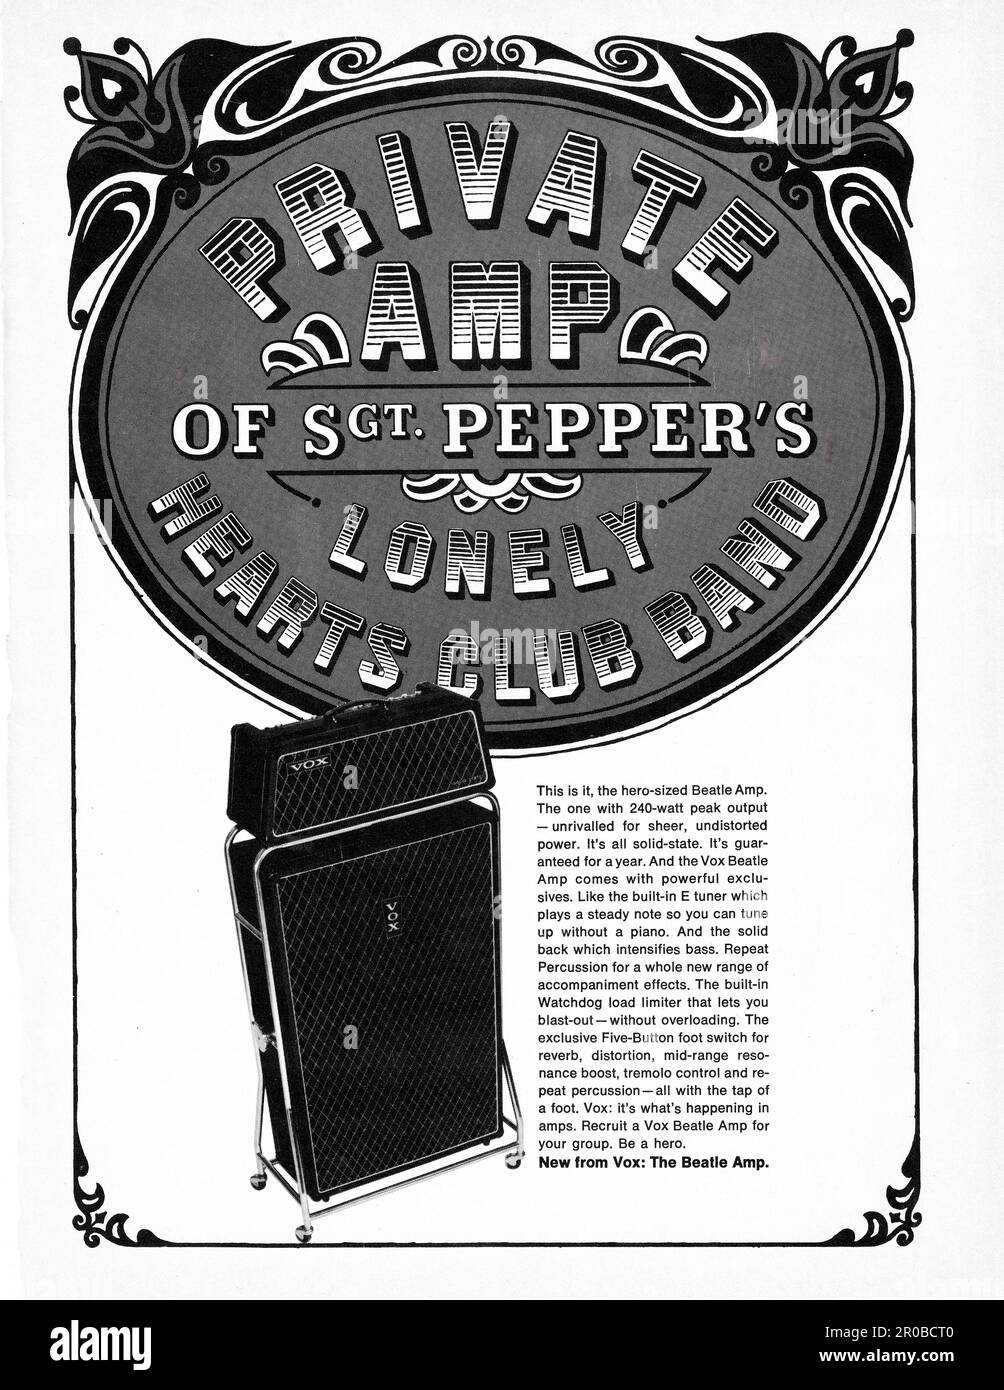 Ein Werbespot für den 240 Watt großen Vox Beatle Verstärker. Es heißt Privatverstärker von Sgt. Pepper's Lonely Hearts Club Band. Eine ganzseitige Anzeige in einem Musikmagazin von 1967. Stockfoto